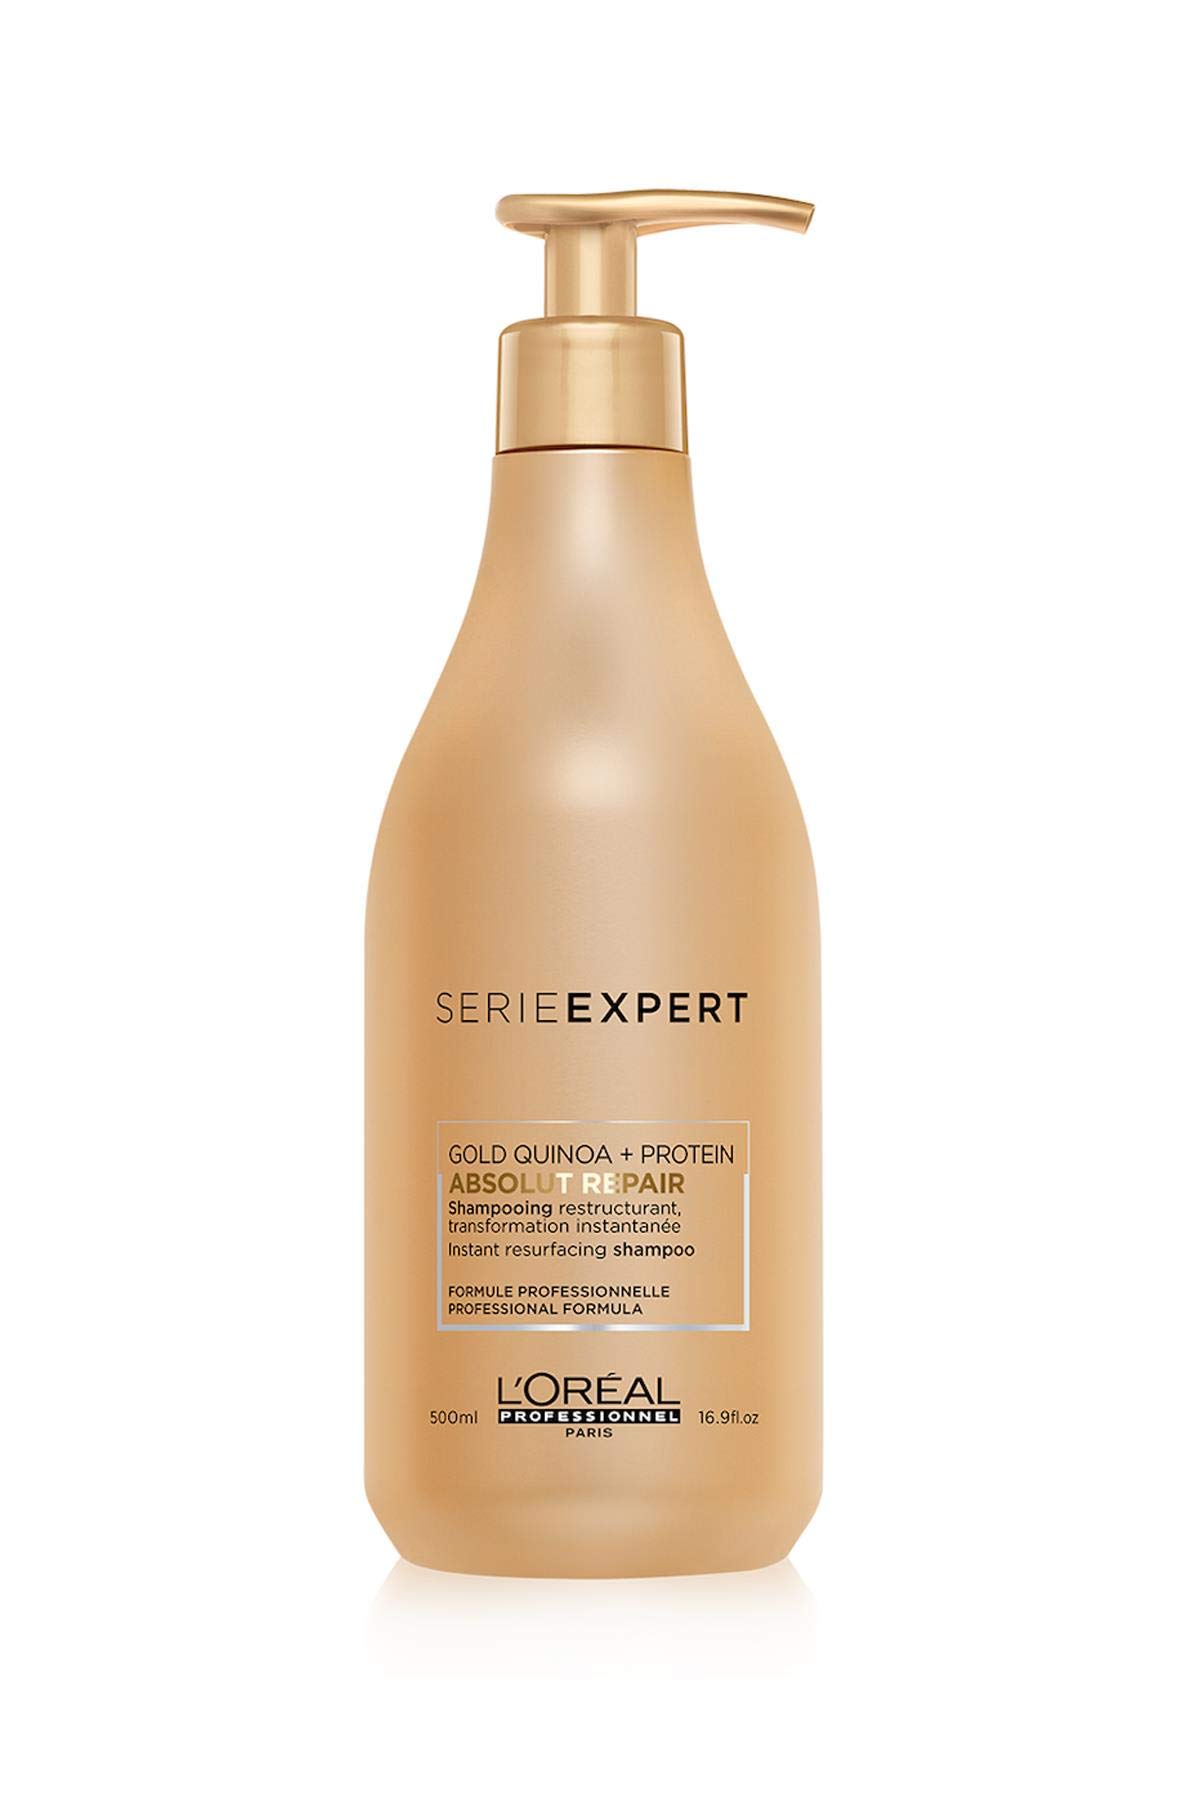 L'Oréal Professionnel Paris Serie Expert Absolut Repair Shampoo, Pflegeshampoo für stark strapaziertes & trockenes Haar, Gold Quinoa + Protein, Haarpflege für leichte Kämmbarkeit, 500 ml